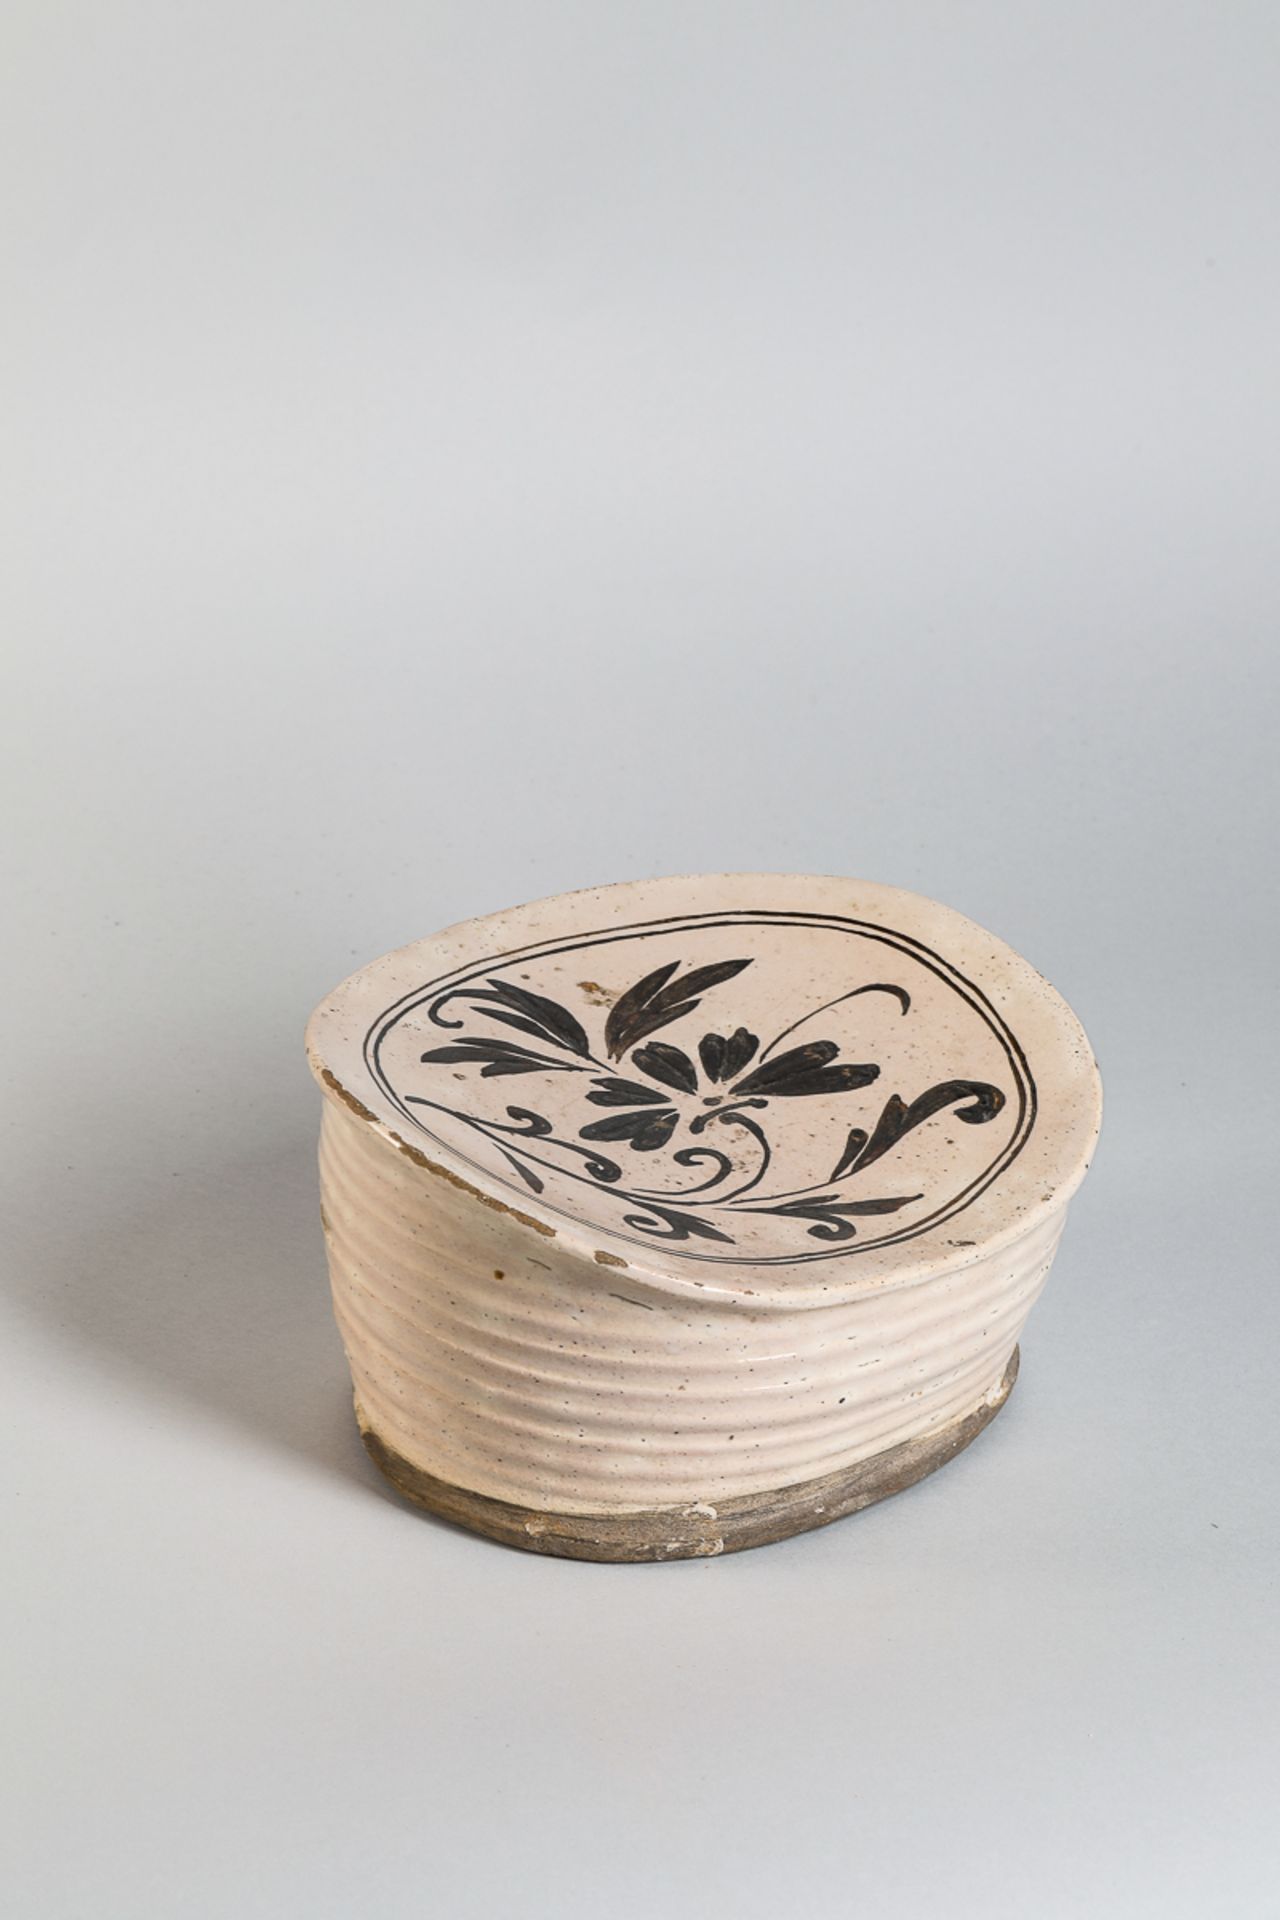 Repose nuque cizhu en céramique à décor floral brun sur glaçure monochrome beige crémeux Chine - Image 3 of 5